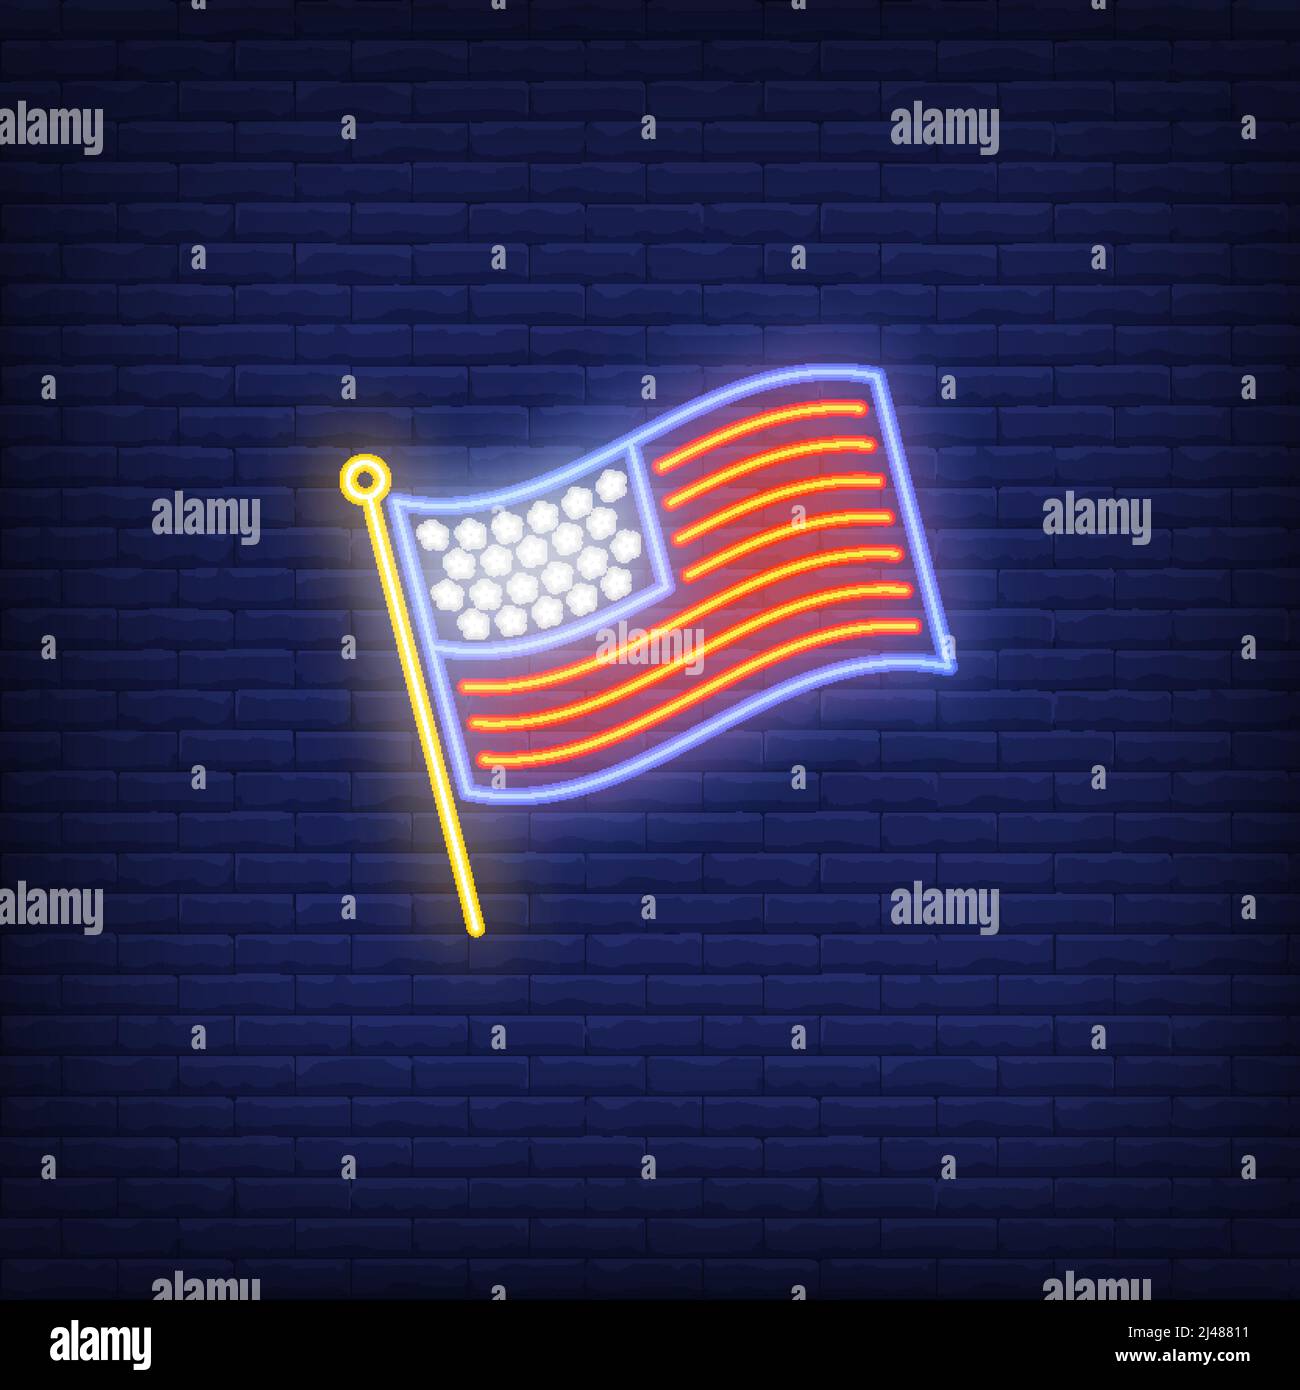 USA Flagge auf Backstein Hintergrund. Neon-Stil Illustration. USA Symbol, Land, Amerika. USA-Banner. Für Patriotismus, Reisen, nationale Kultur Stock Vektor